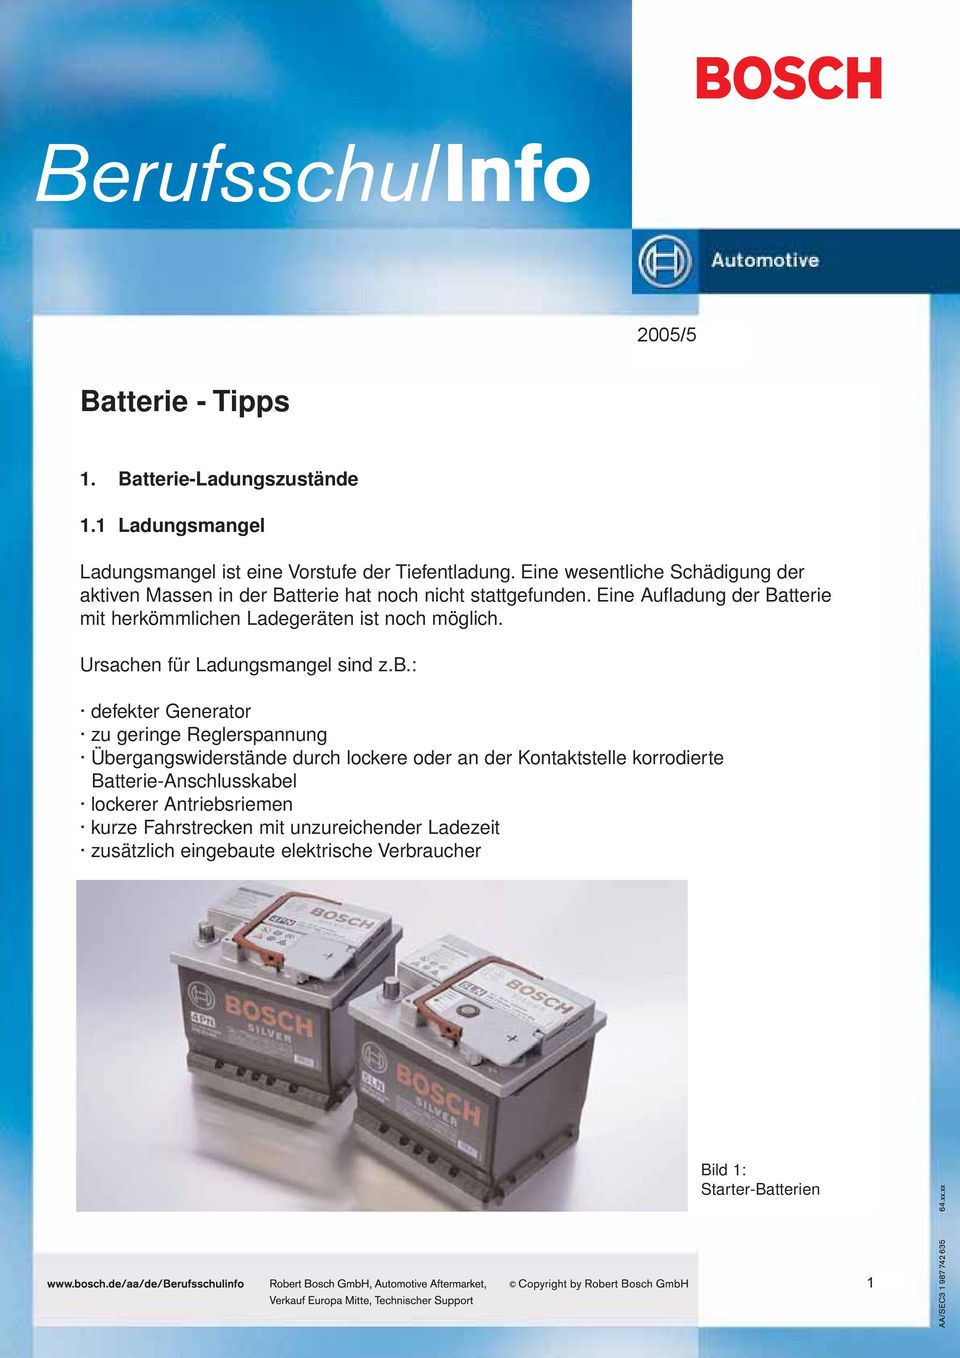 Eine Aufladung der Batterie mit herkömmlichen Ladegeräten ist noch möglich. Ursachen für Ladungsmangel sind z.b.